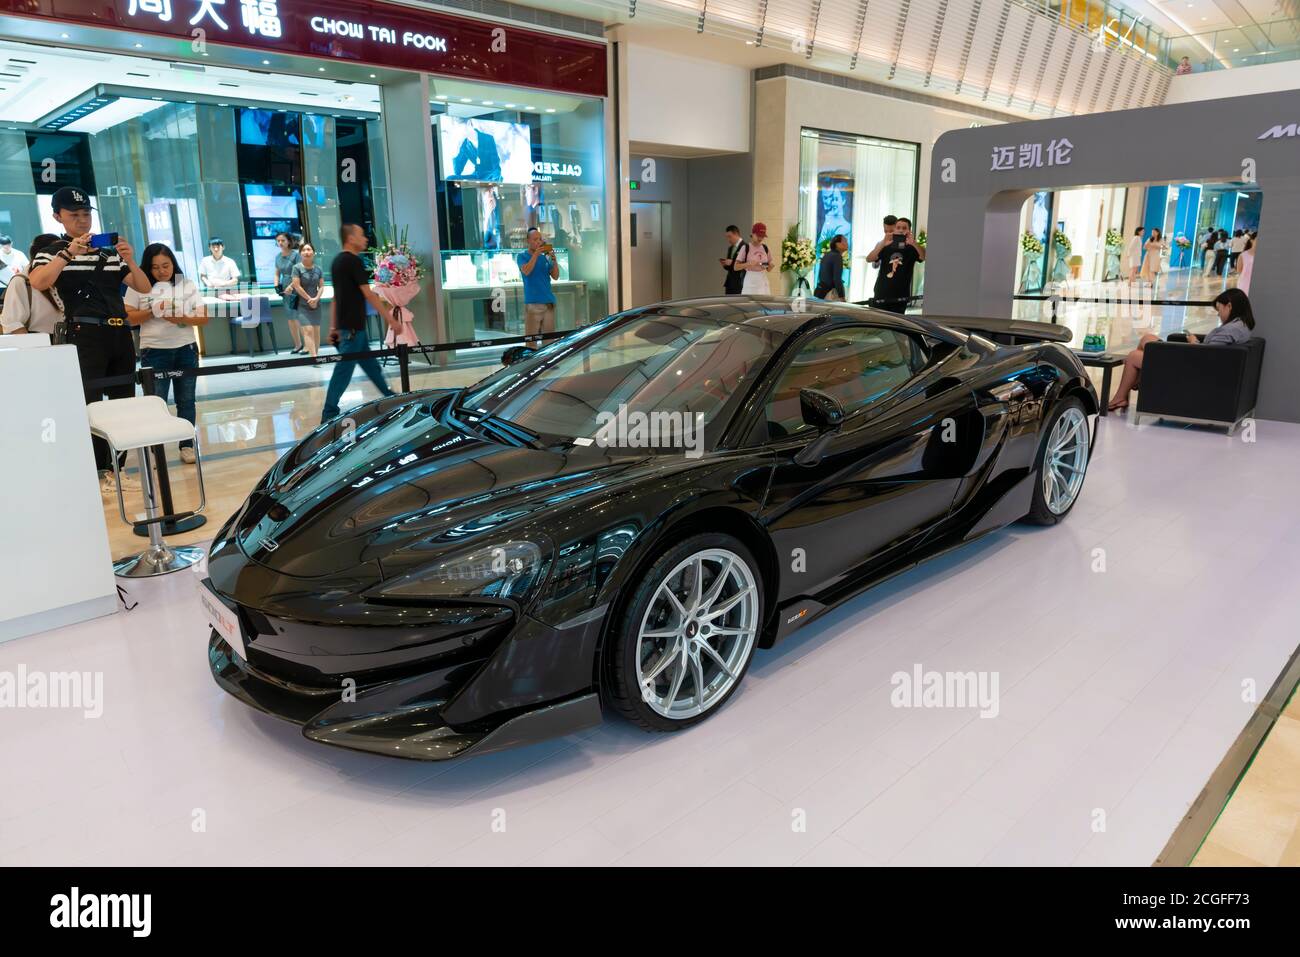 Luxus-Auto auf dem Display in einem Einkaufszentrum in China Stockfoto